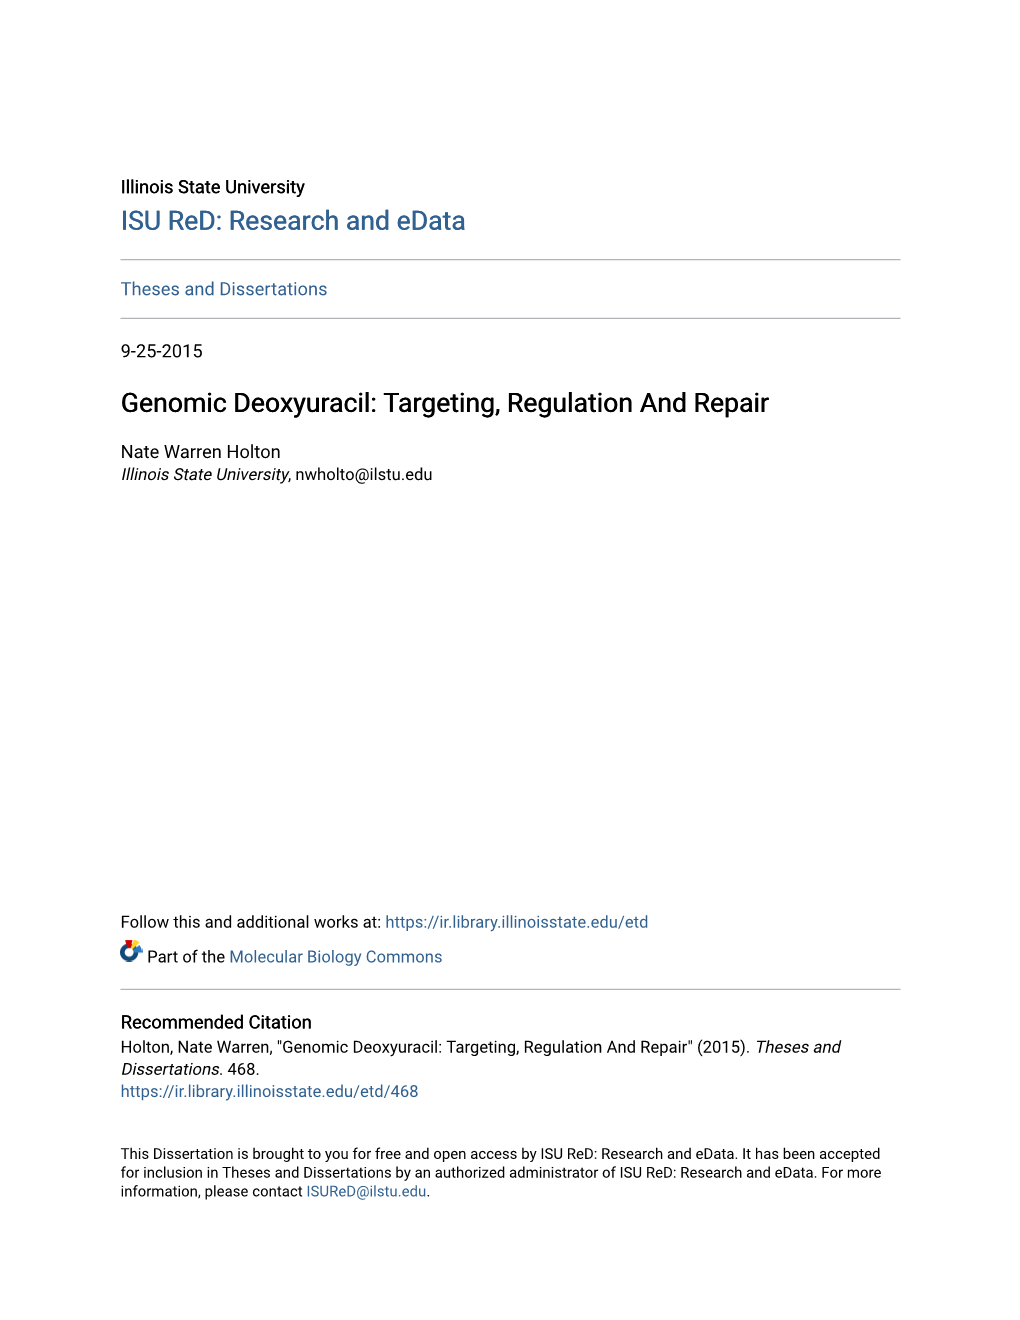 Genomic Deoxyuracil: Targeting, Regulation and Repair